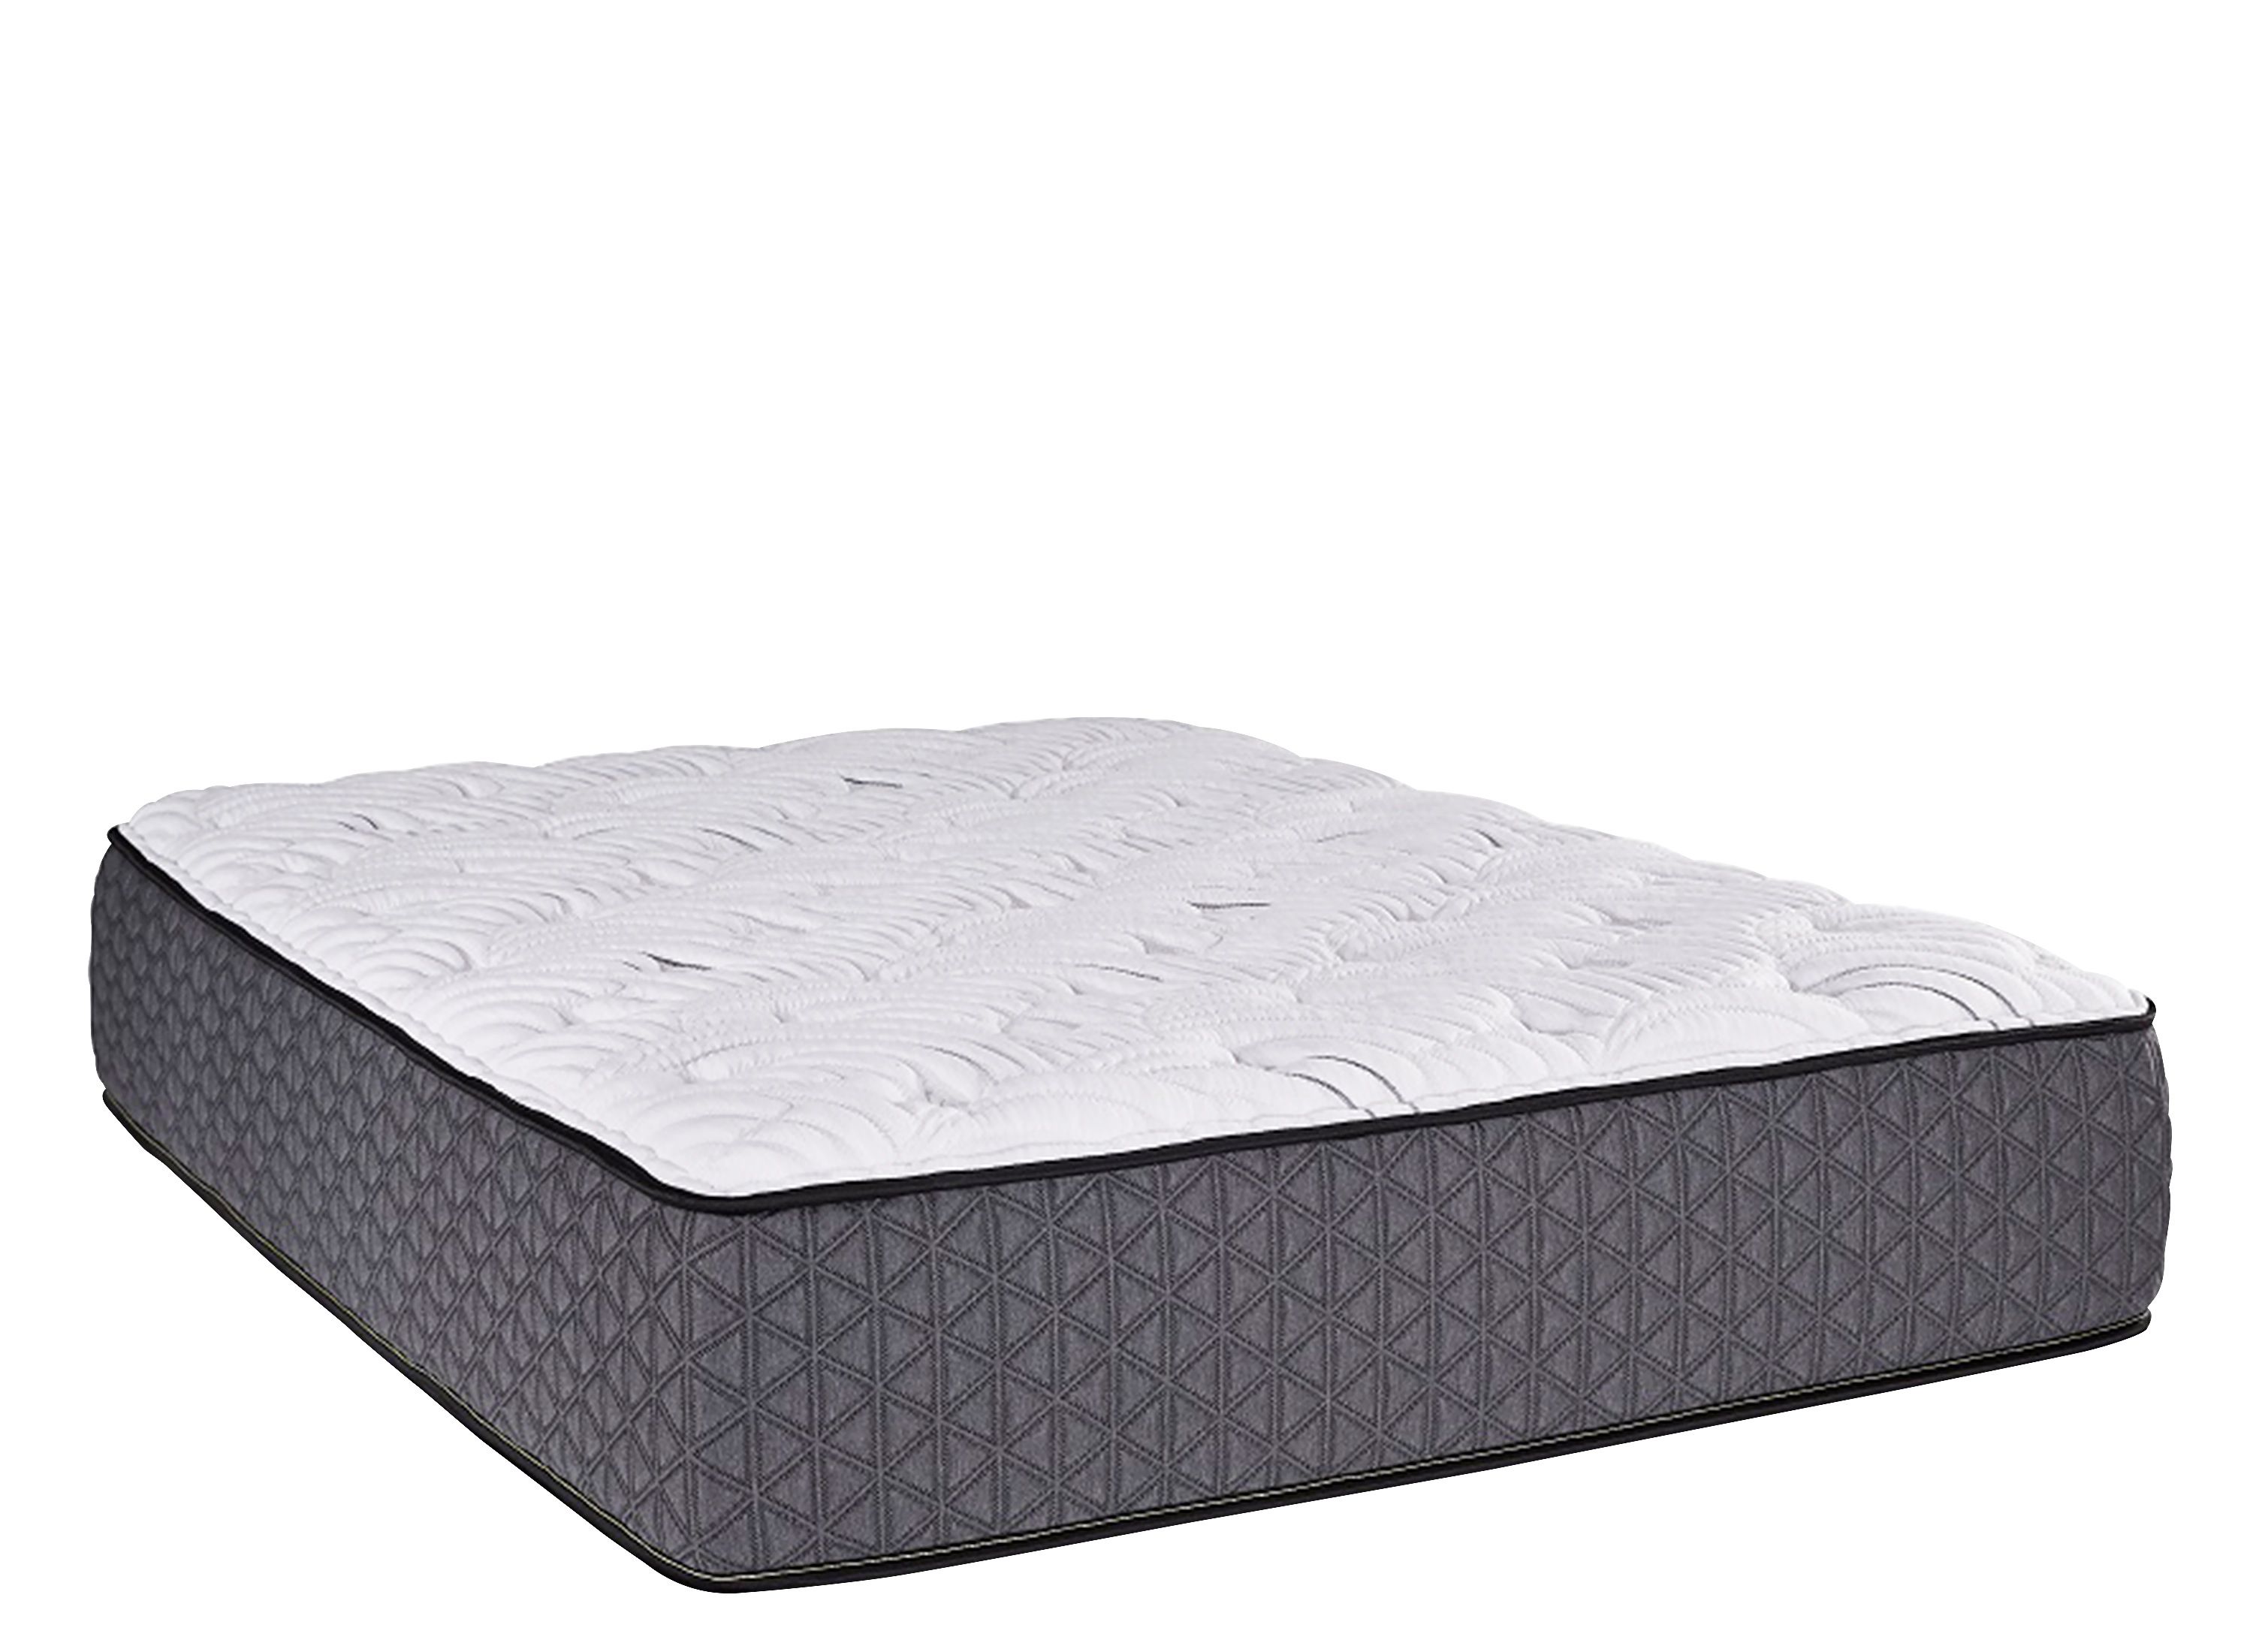 bellanest imperial euro top queen mattress